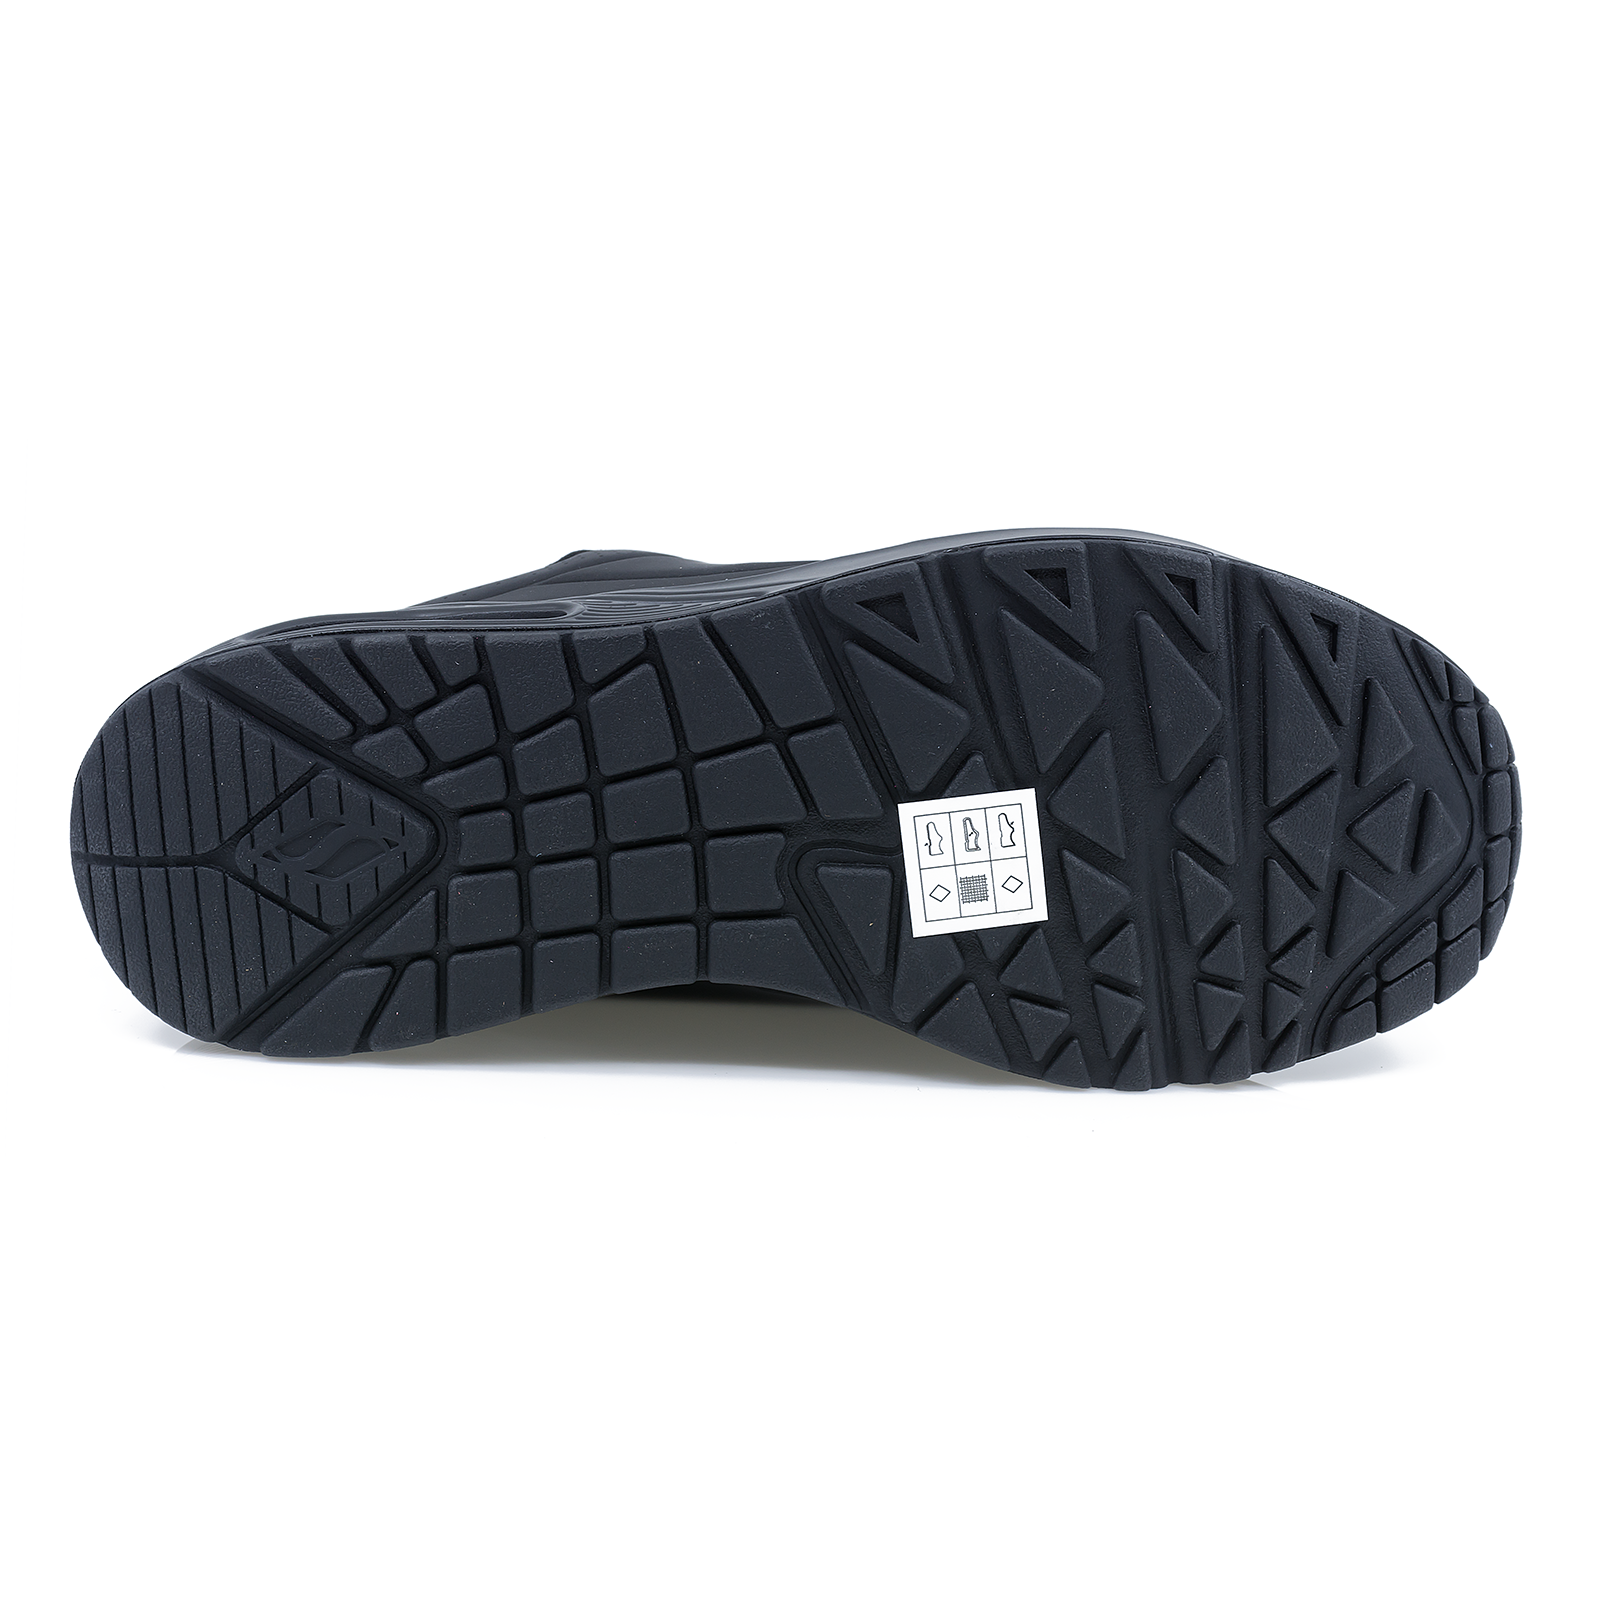 Pantofi-barbati-SKECHERS-SKE-52458-sport-materialsintetic-negru-nouamoda.ro-4